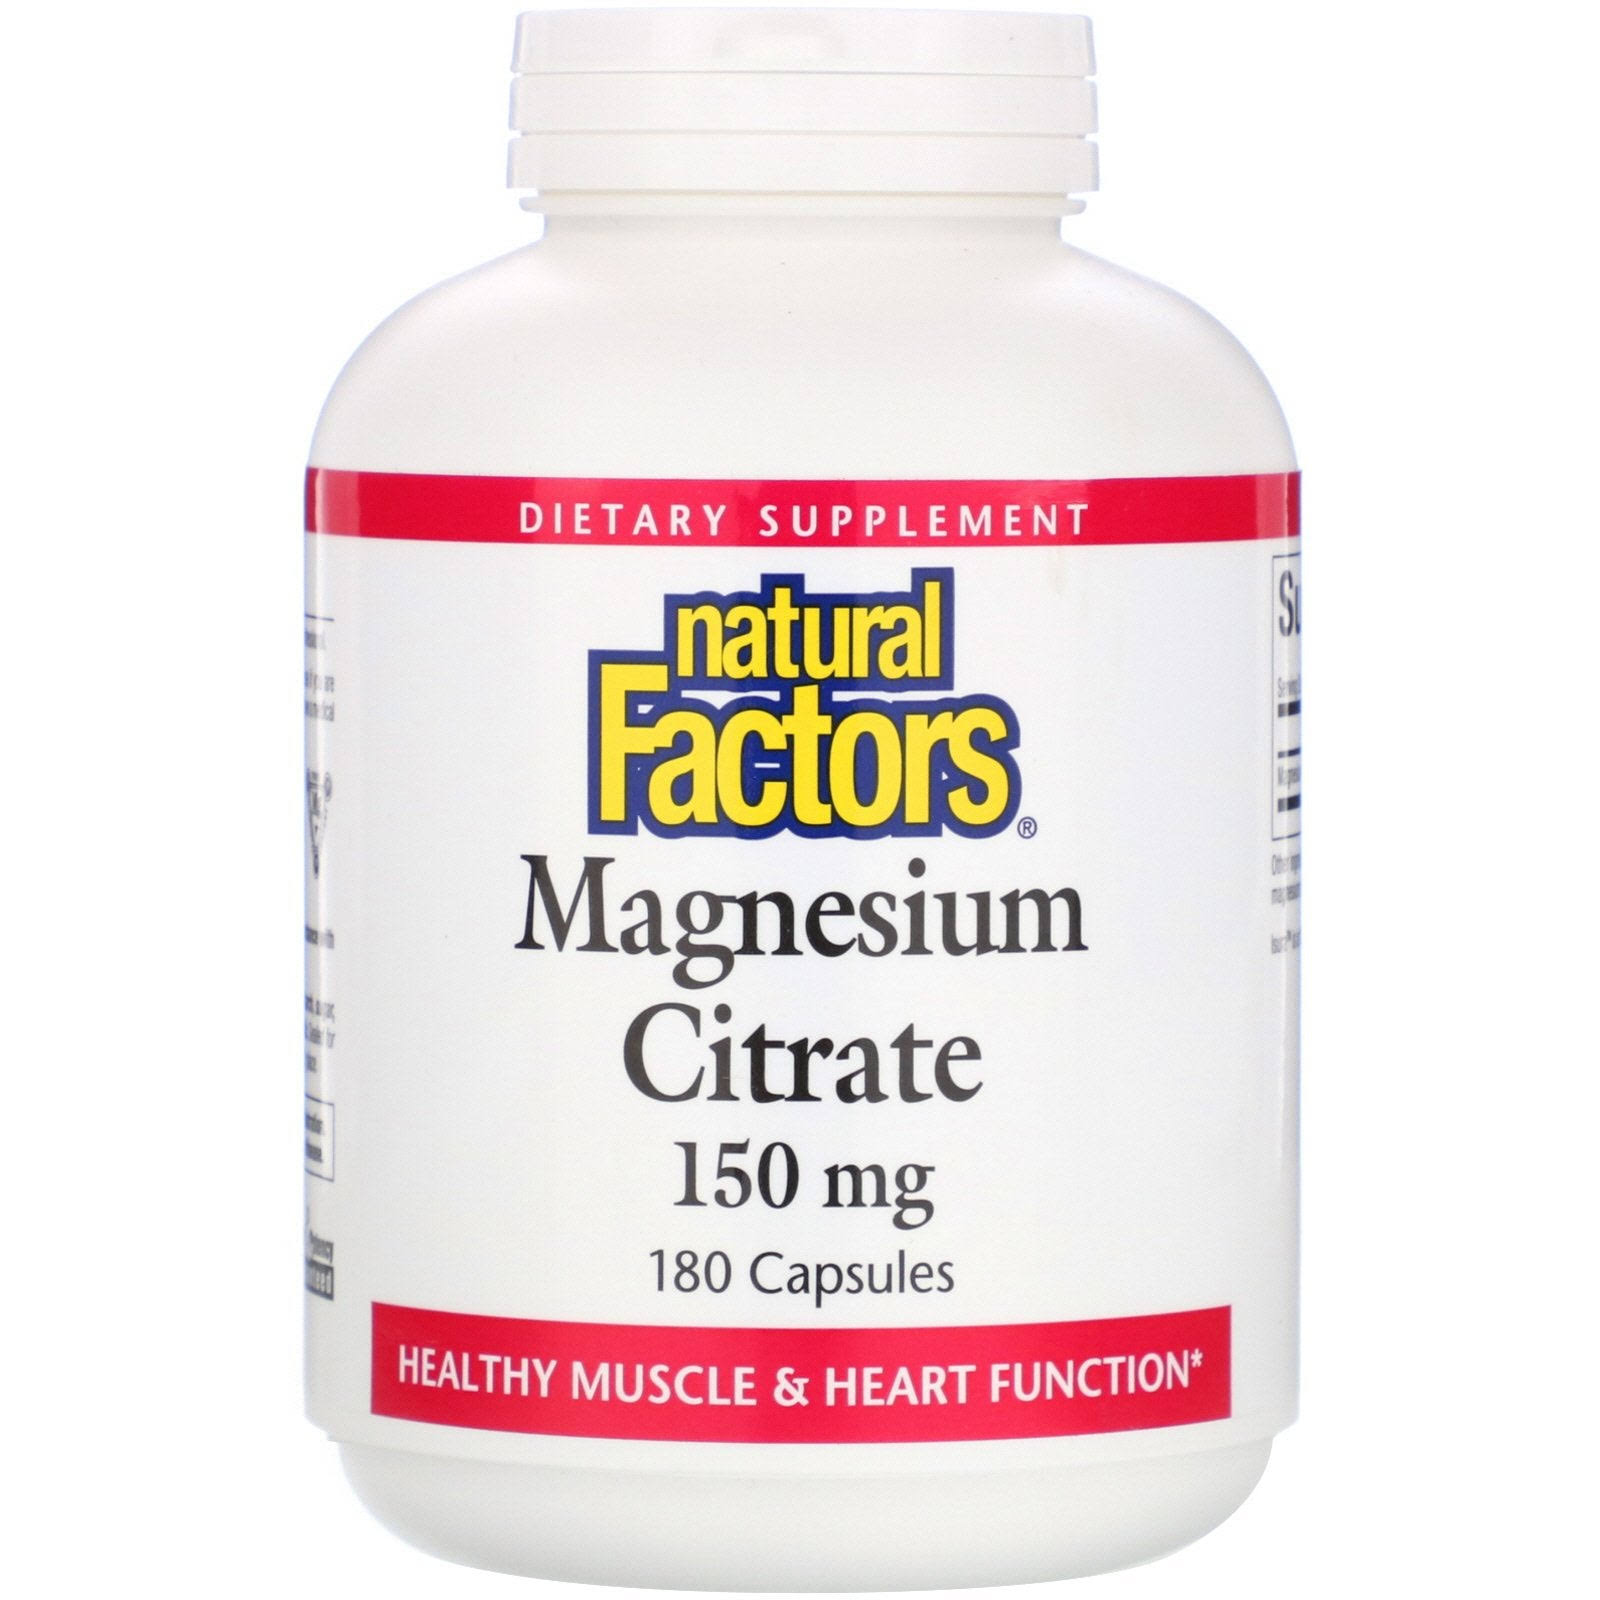 Natural Factors Magnesium Citrate - 150mg, 180 Capsules